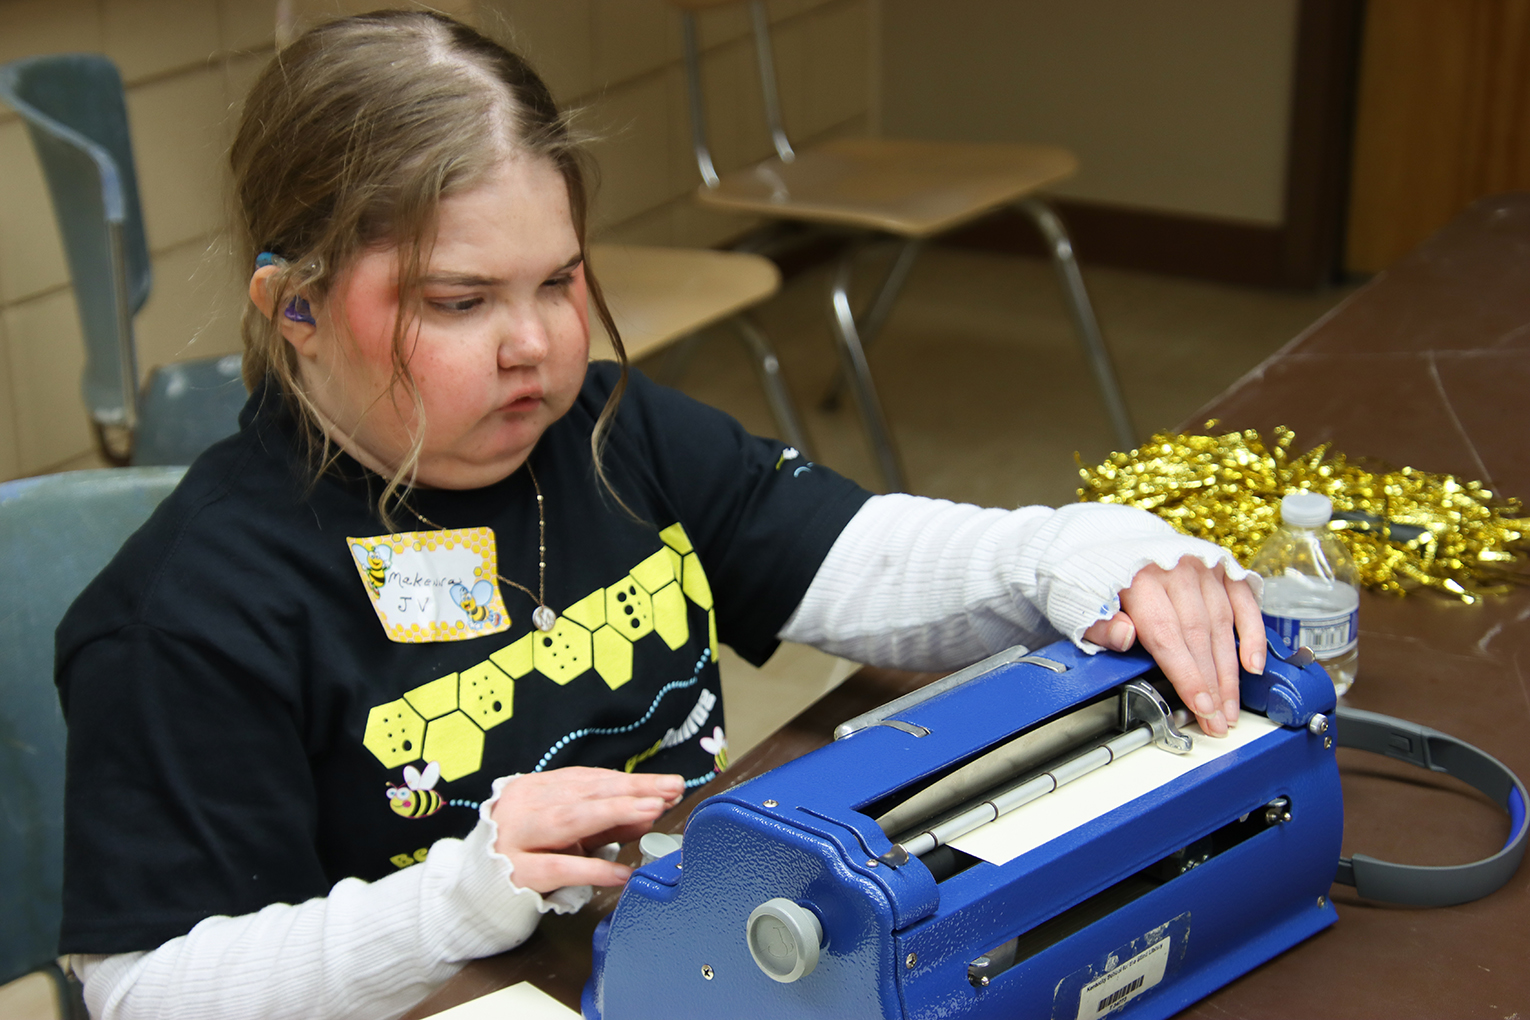 MaKenna Harrod practices on a braille machine